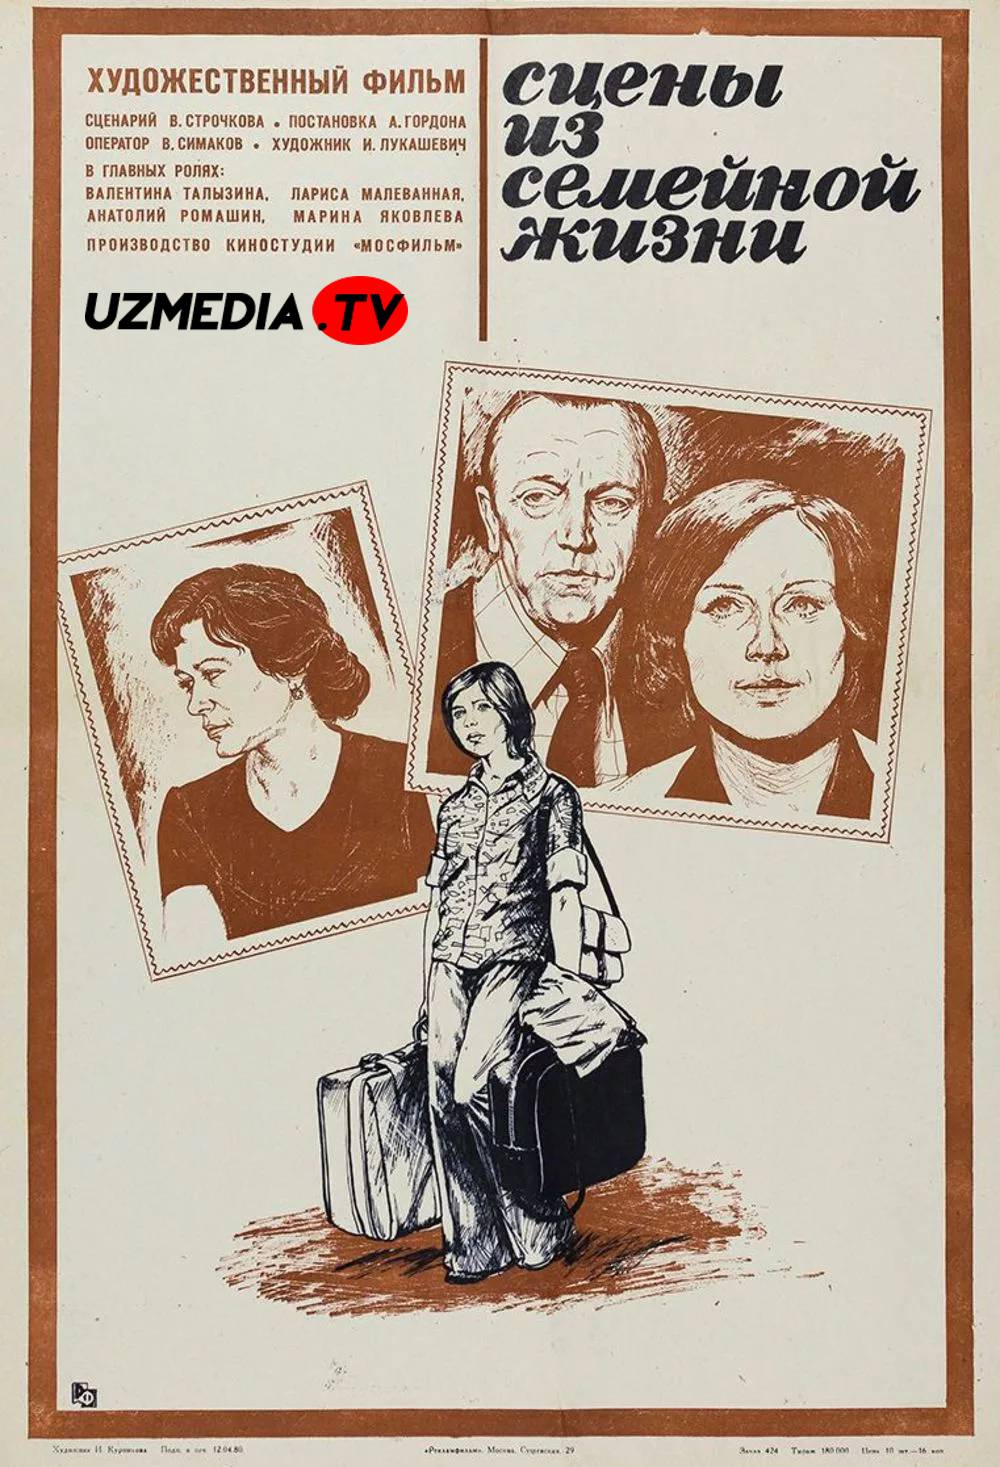 Oilaviy hayotdan lahzalar SSSR retro filmi Uzbek tilida O'zbekcha 1979 tarjima kino SD skachat